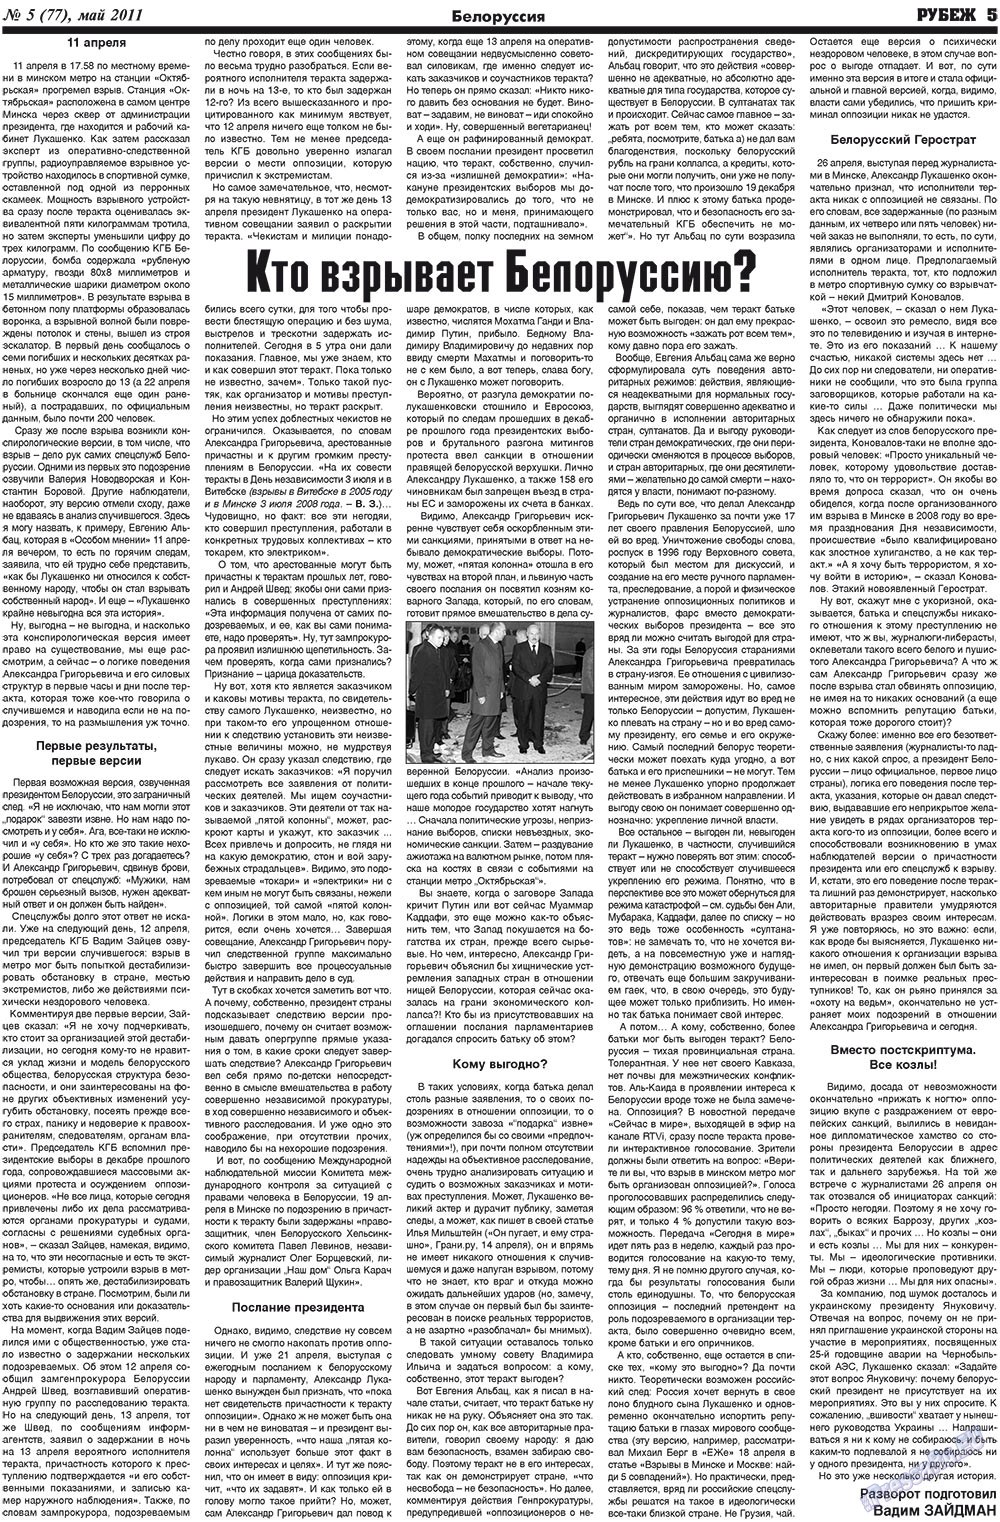 Рубеж (газета). 2011 год, номер 5, стр. 5